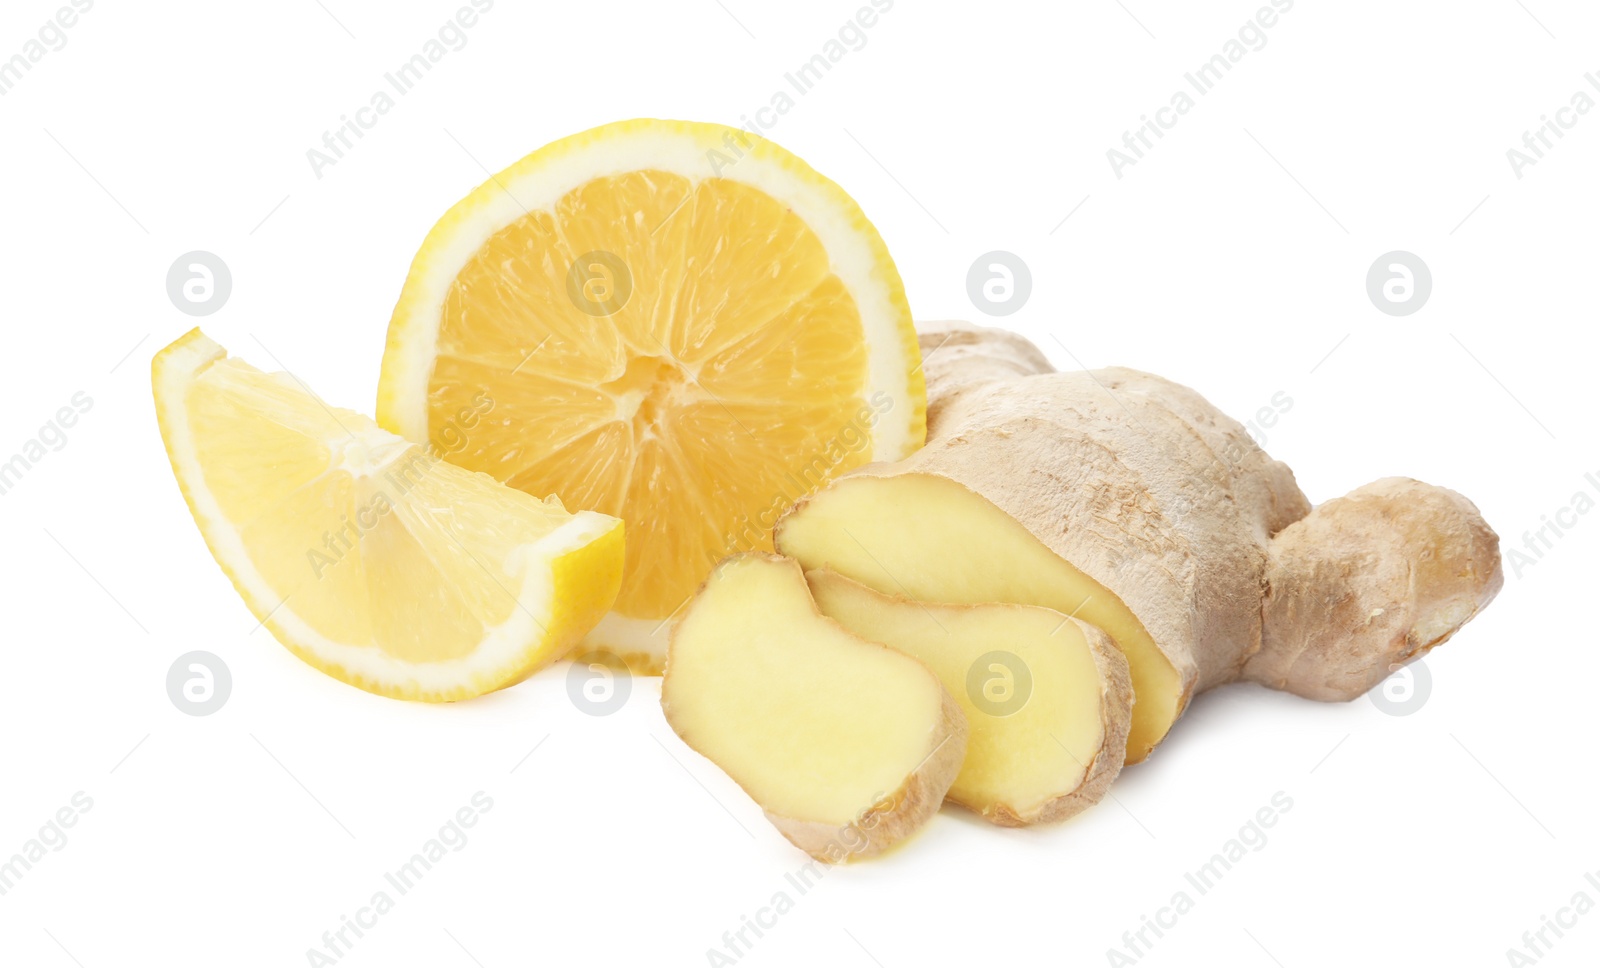 Photo of Fresh lemon and ginger on white background